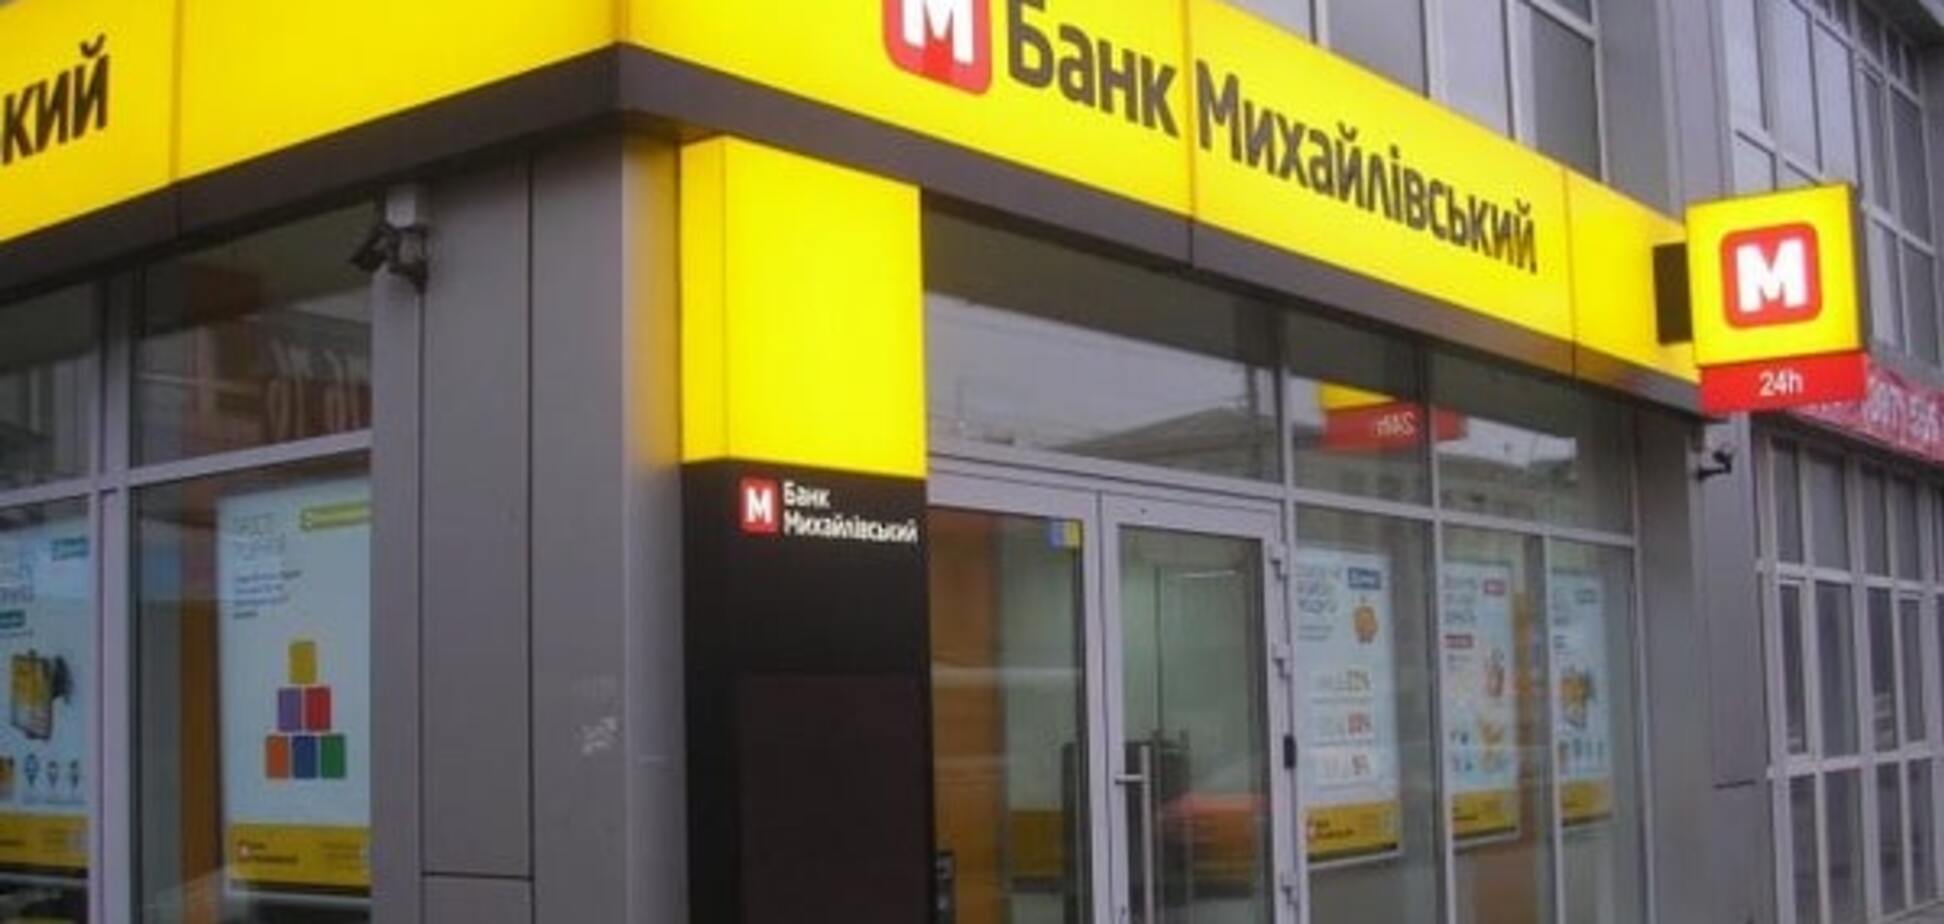 Банк Михайловский